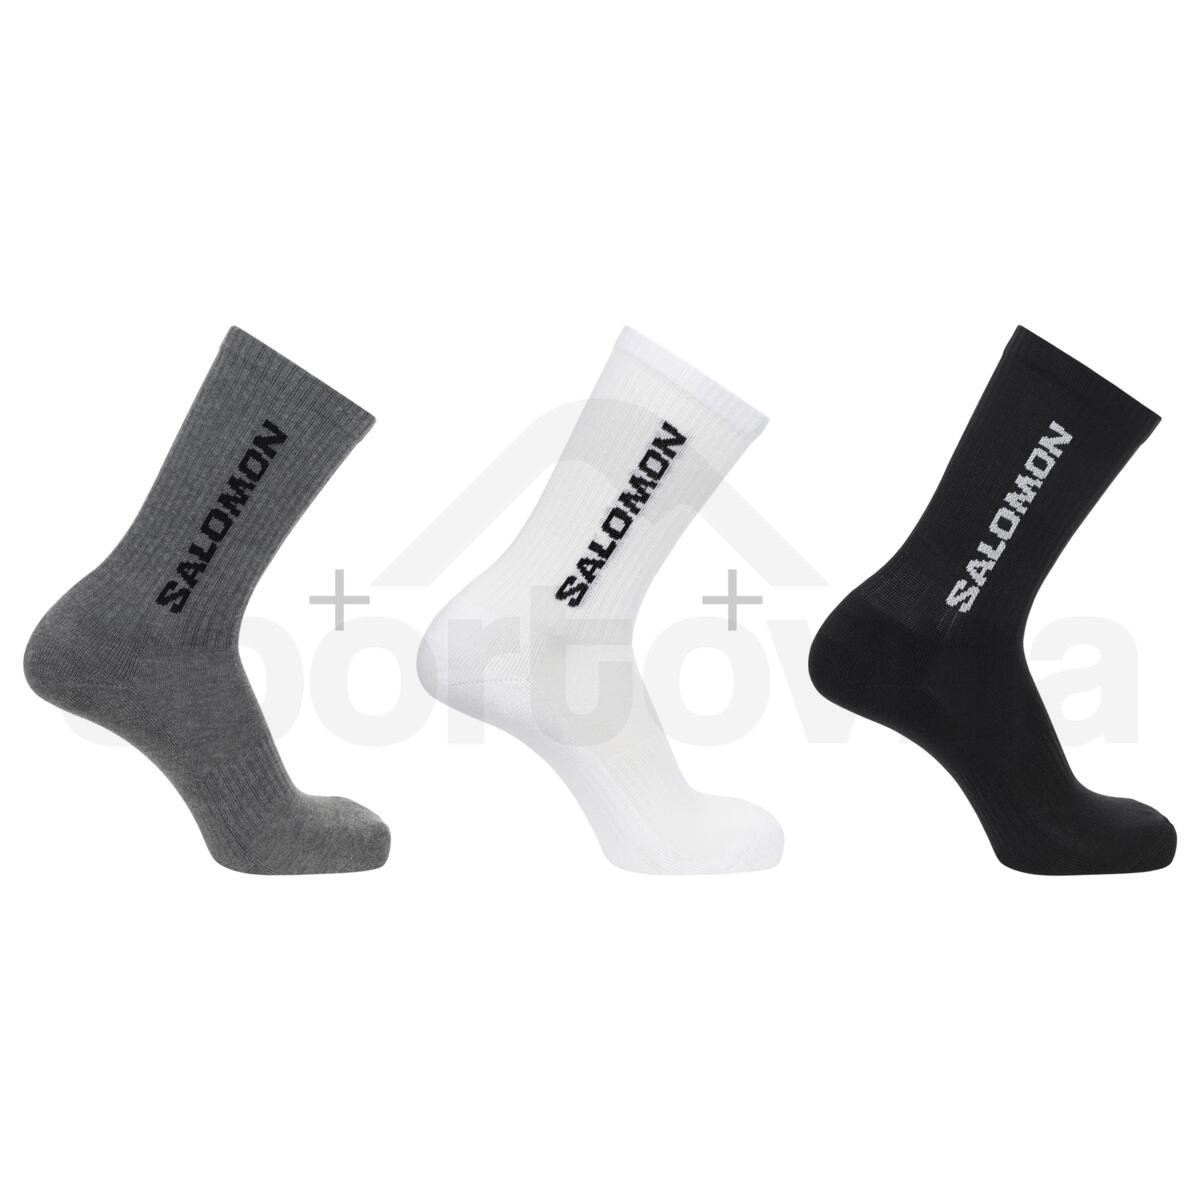 Ponožky Salomon Everyday Crew 3-Pack - šedá/černá/bílá